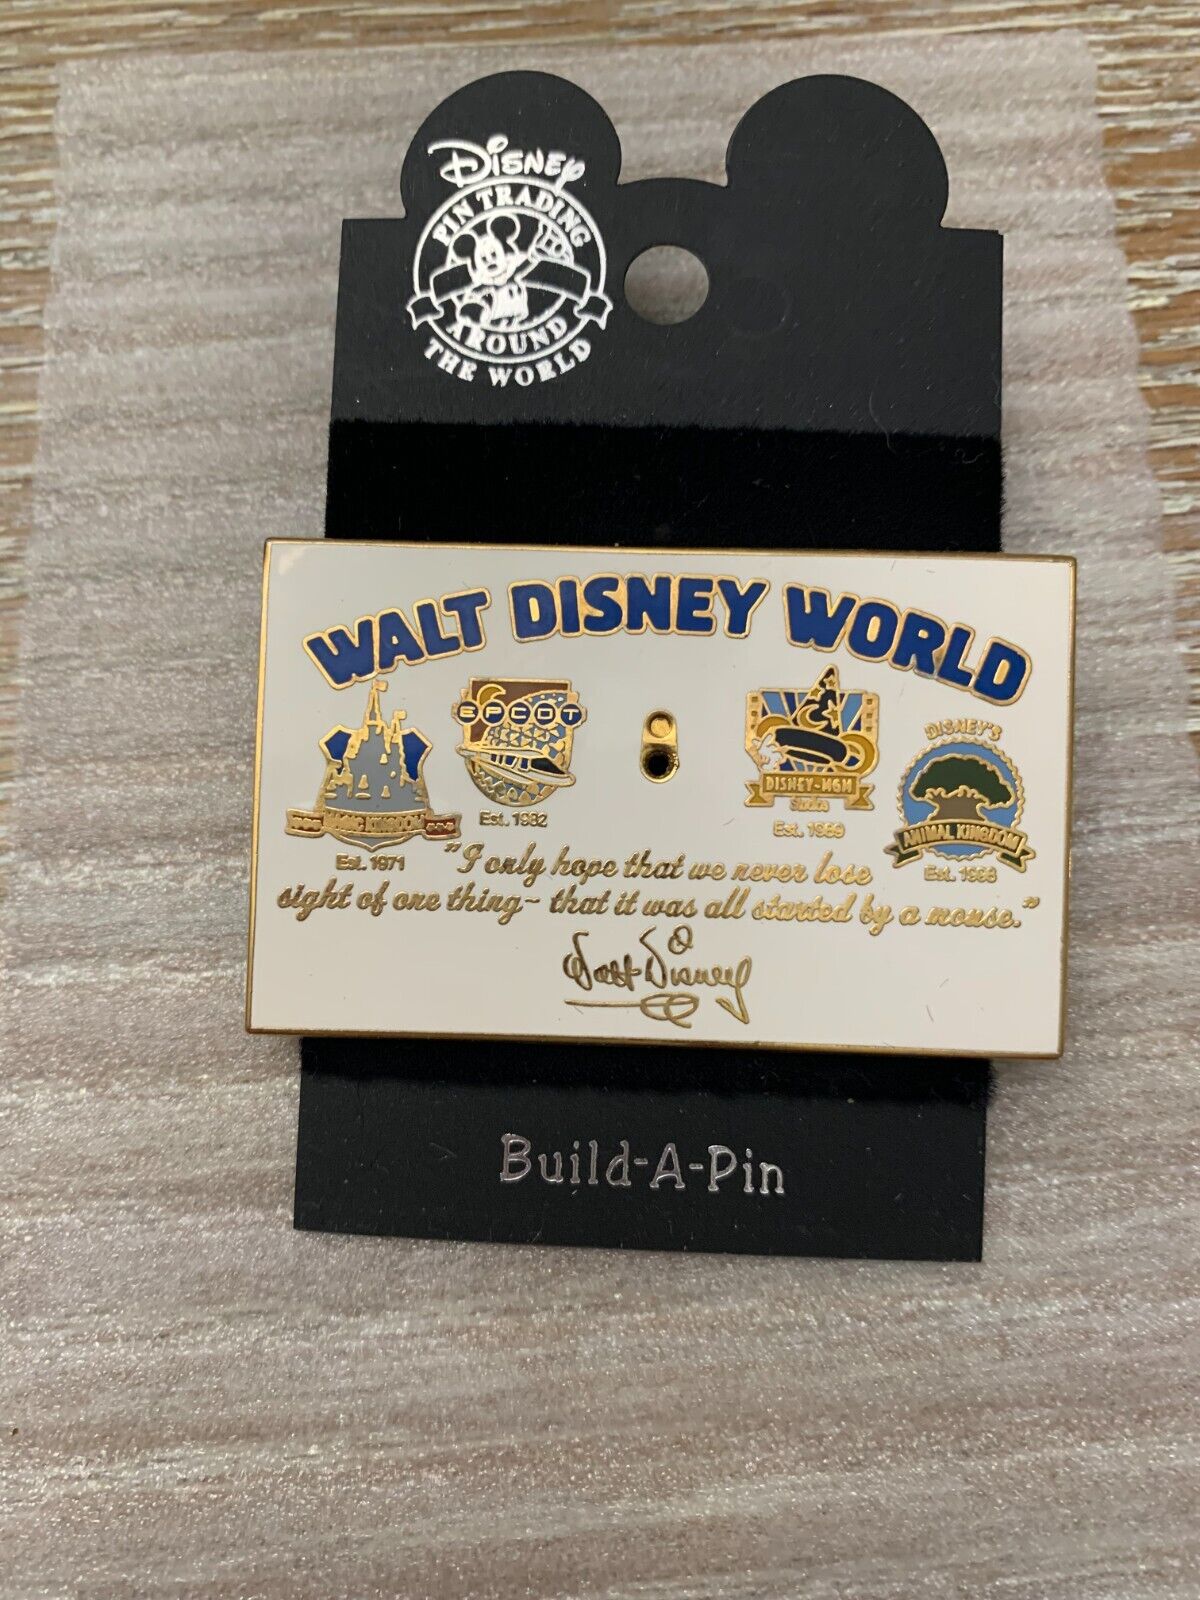 2003 Disney Build a pin Base